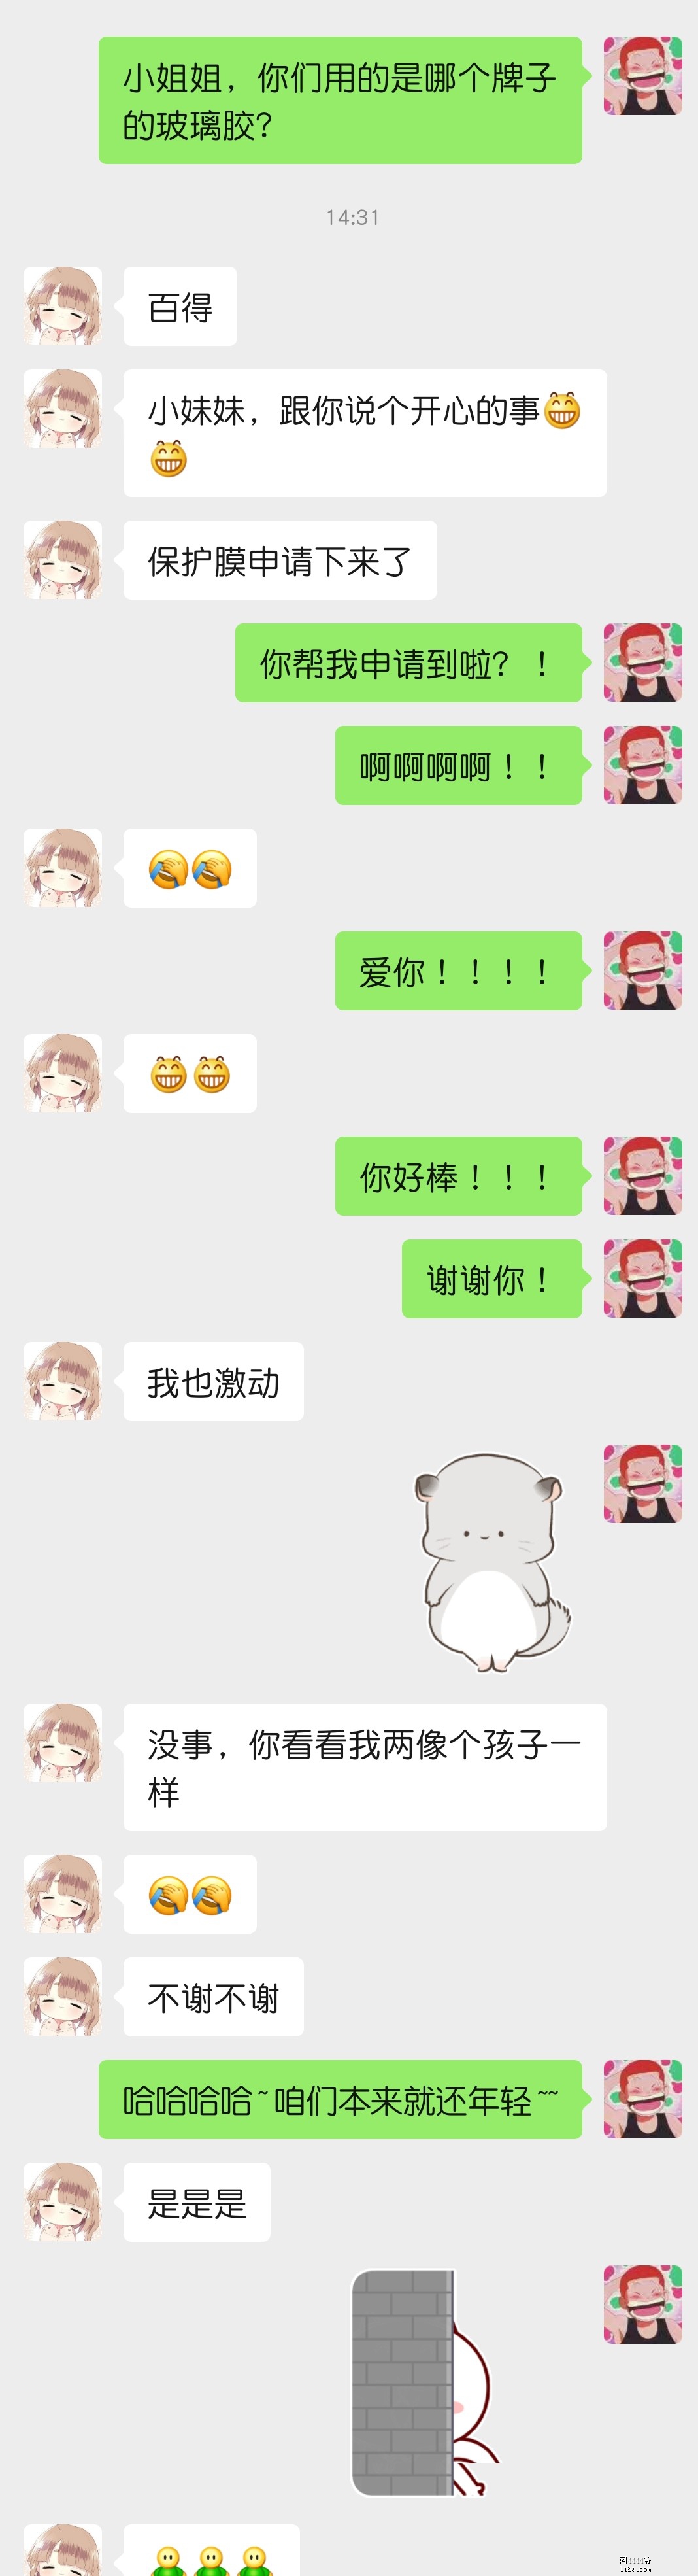 WeChat Image_20201120144342.jpg